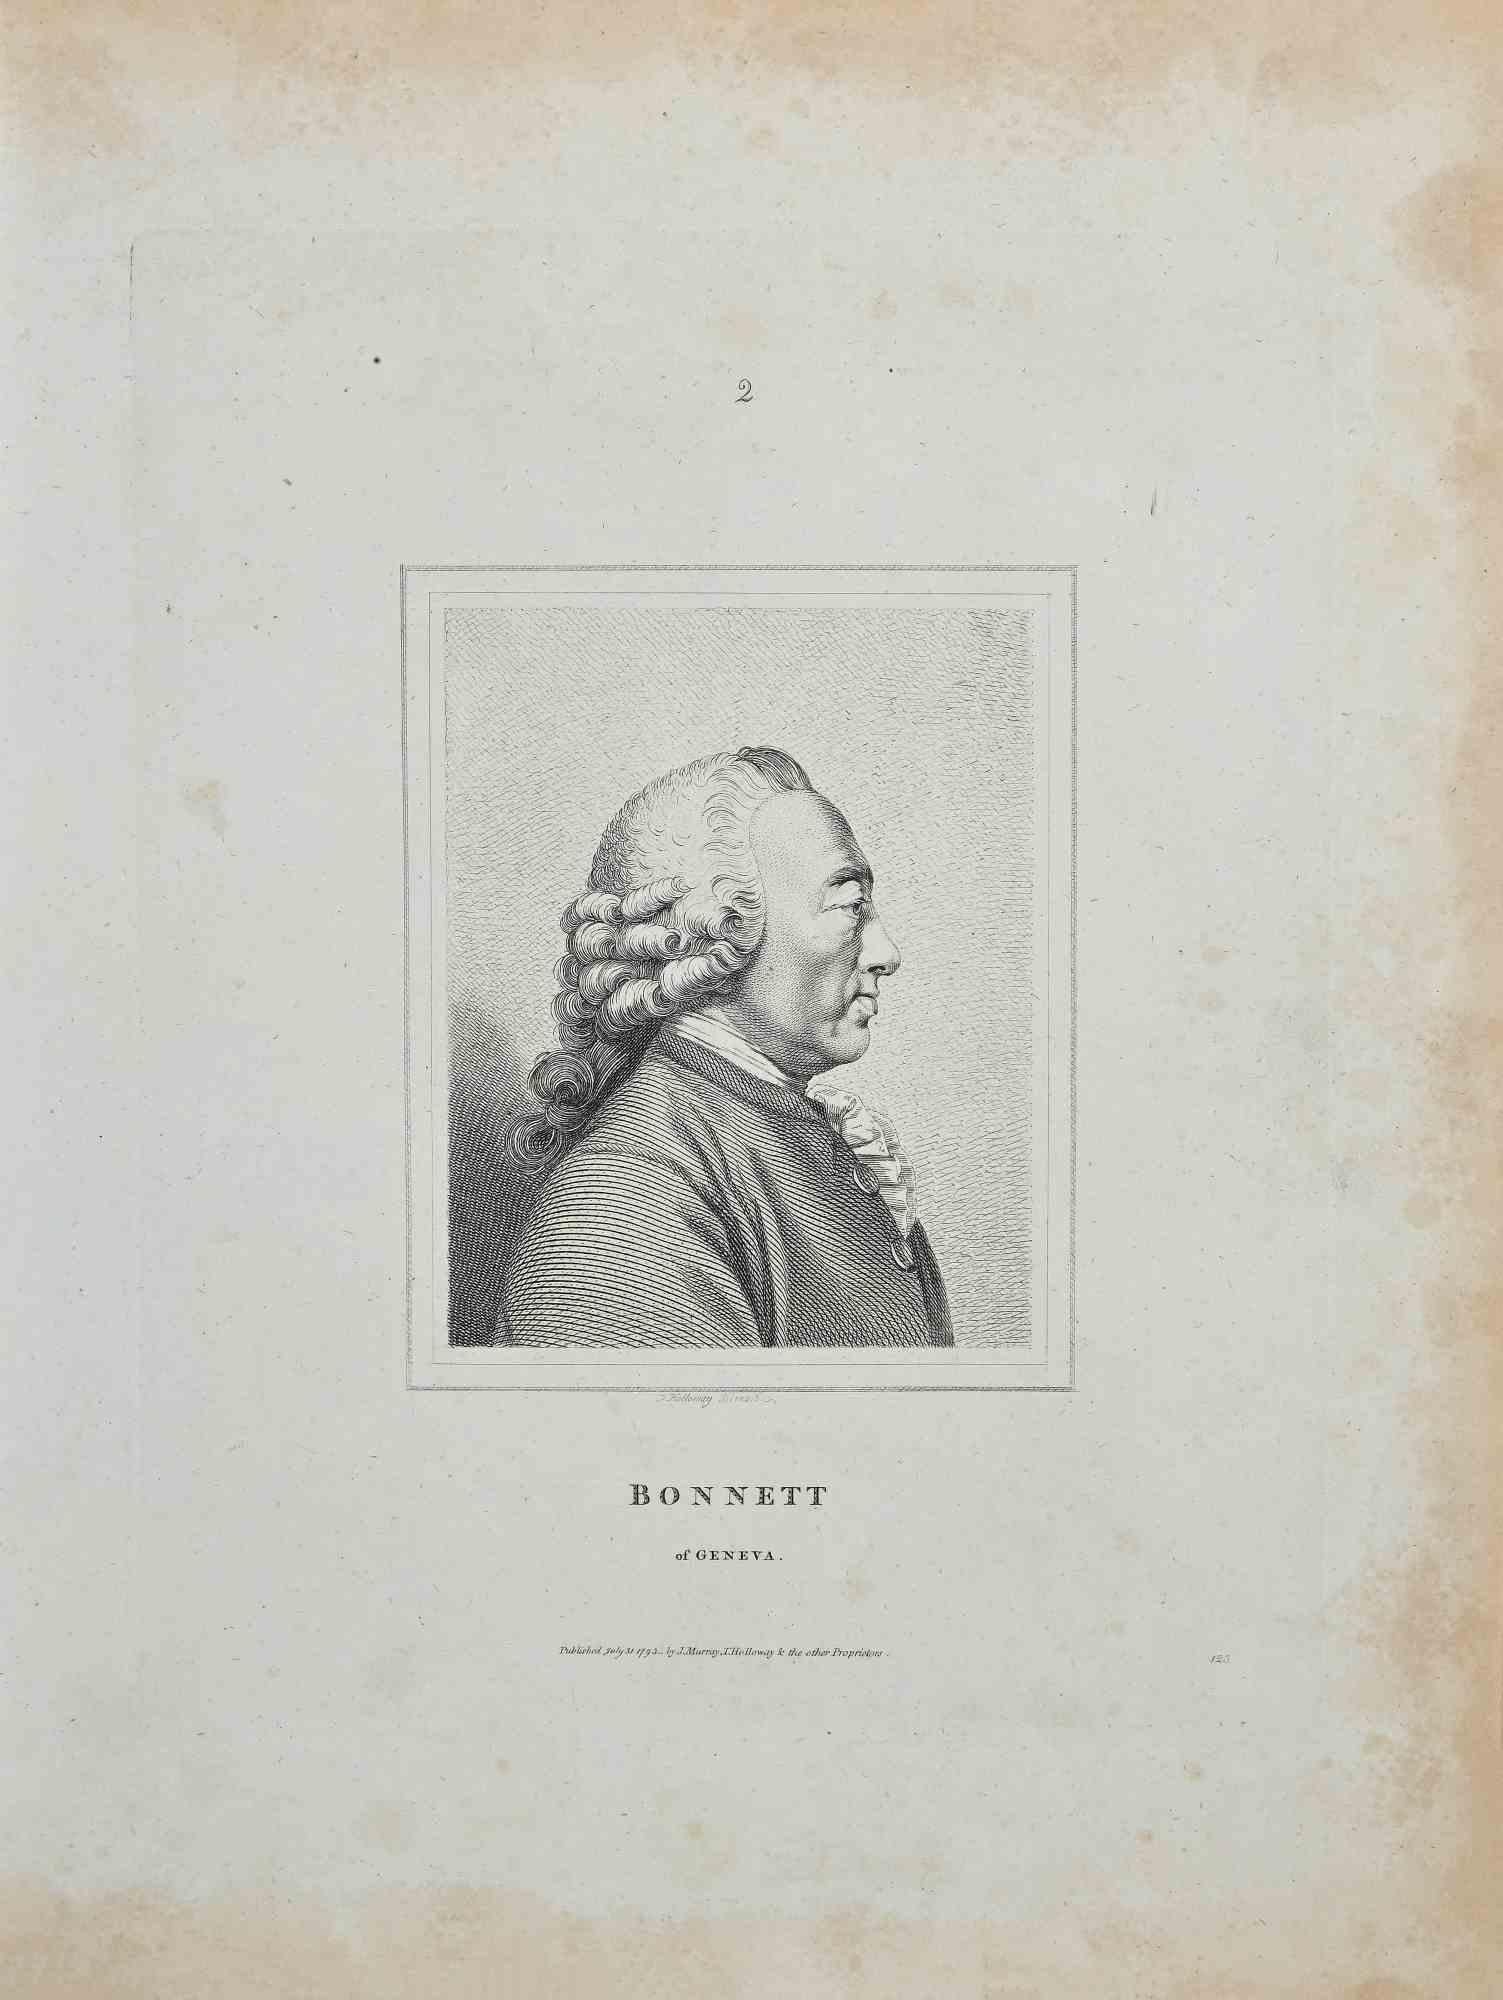 Portrait de Bonnett de Genève - gravure originale de Thomas Holloway - 1810